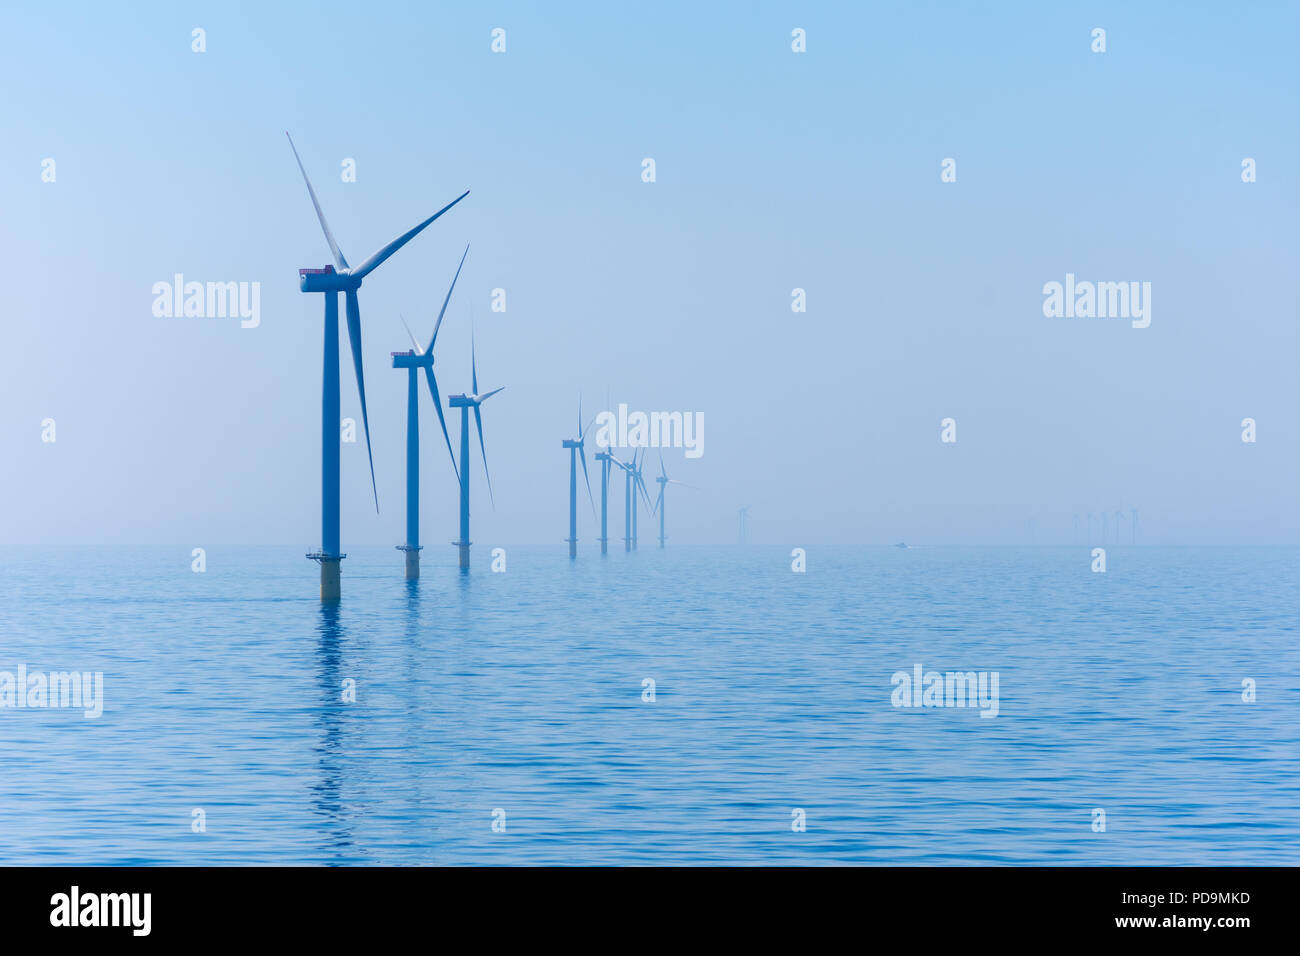 Galloper Offshore Wind Farm, Located 27 kilometers off the English coast in the North Sea Stock Photo